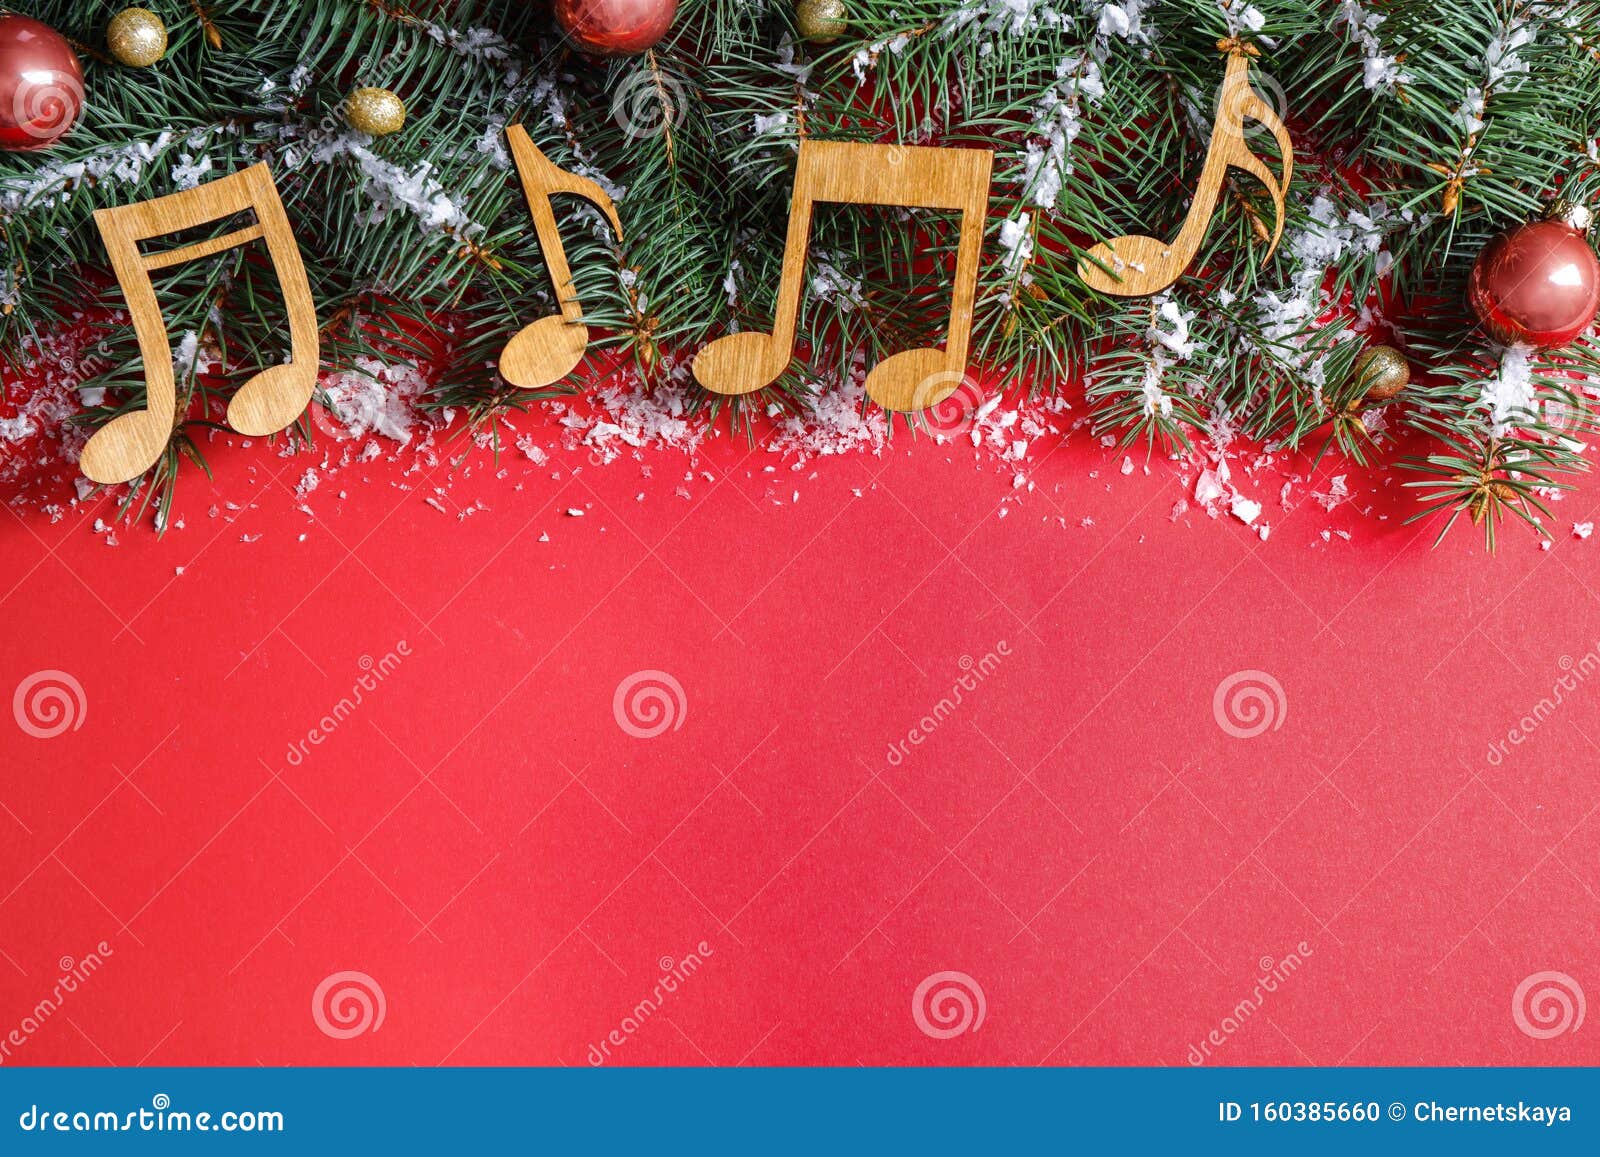 Lời chúc Giáng Sinh nồng nàn cùng những nốt nhạc tràn đầy niềm vui, tất cả đều hiện diện trong bức hình thiết kế Flat Lay Composition với những đồ trang trí Giáng Sinh và những nốt nhạc trên nền đỏ. Nhấp chuột để khám phá thêm hình ảnh liên quan đến âm nhạc Giáng Sinh này.